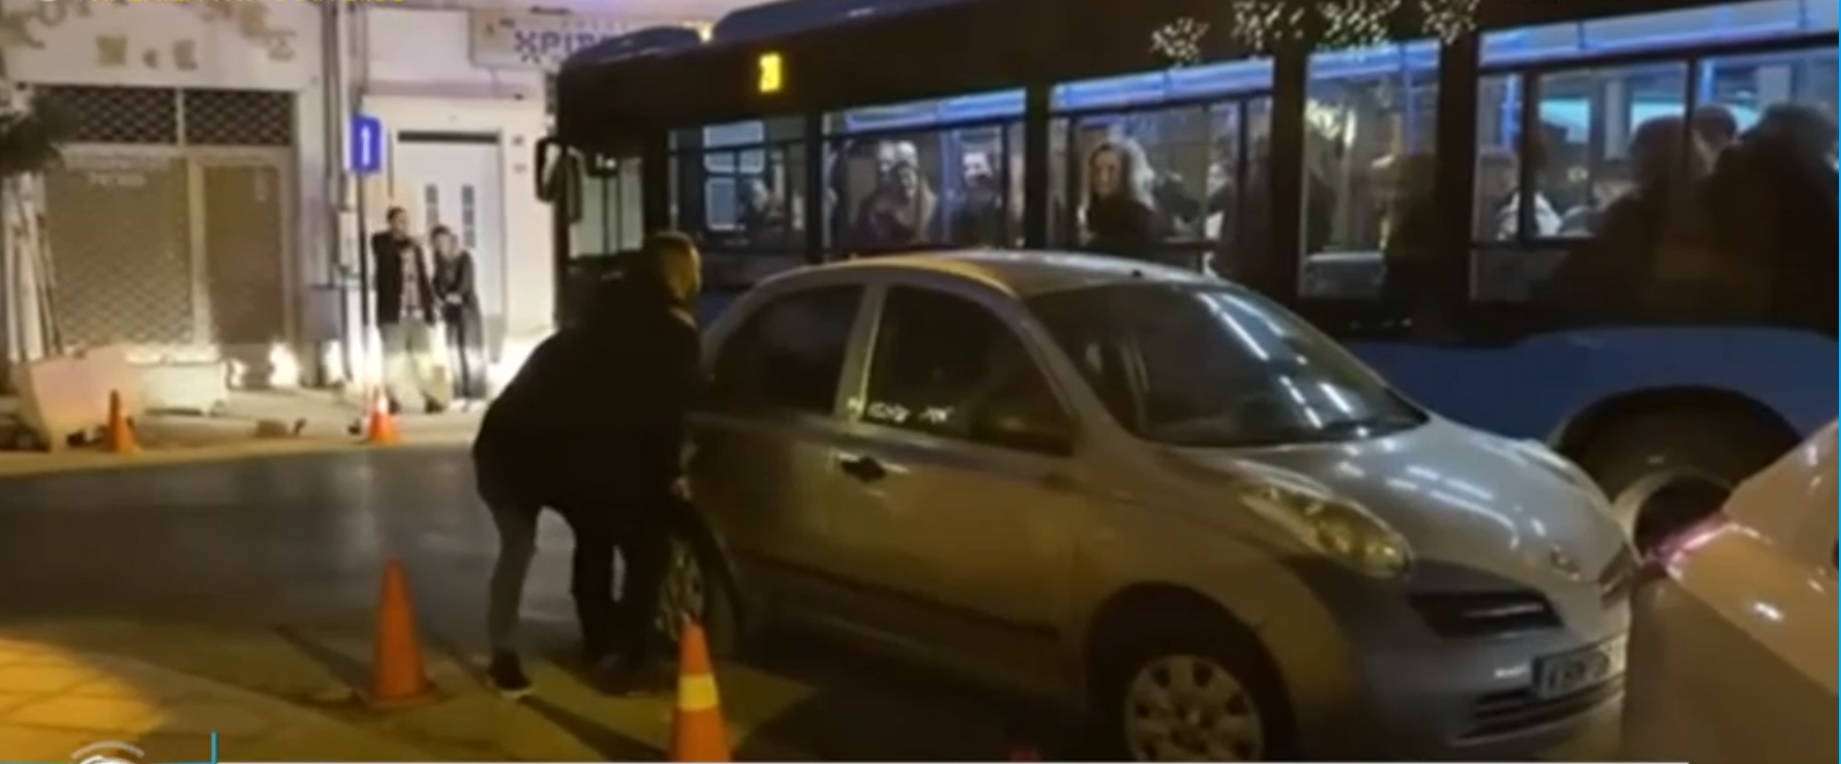 Θεσσαλονίκη: Σήκωσαν αυτοκίνητο στα χέρια για να περάσει λεωφορείο